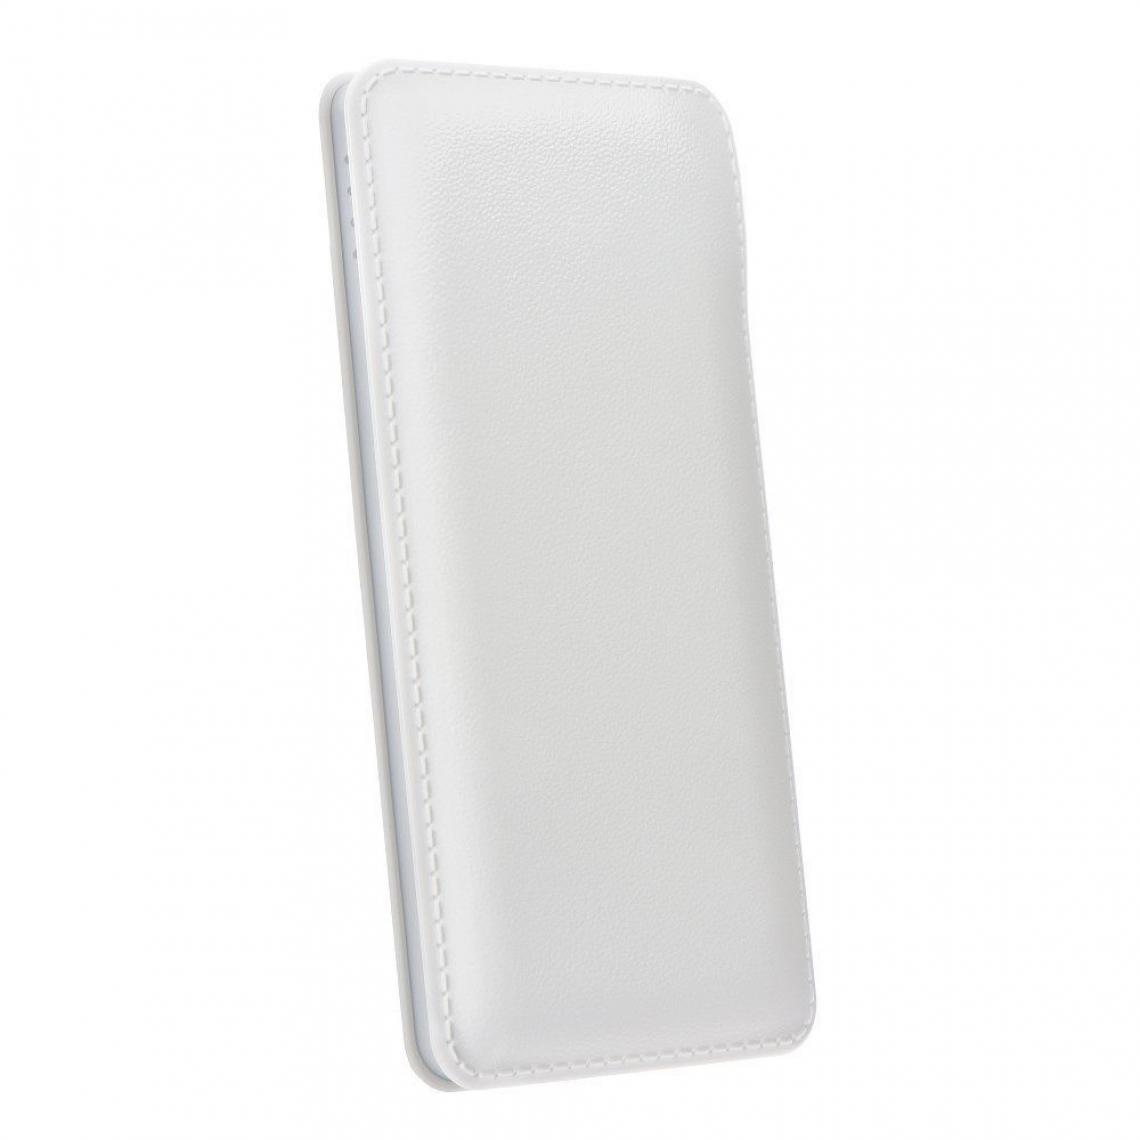 Ozzzo - Chargeur batterie externe 20000 mAh powerbank ozzzo blanc pour Teclast X6 Pro - Autres accessoires smartphone